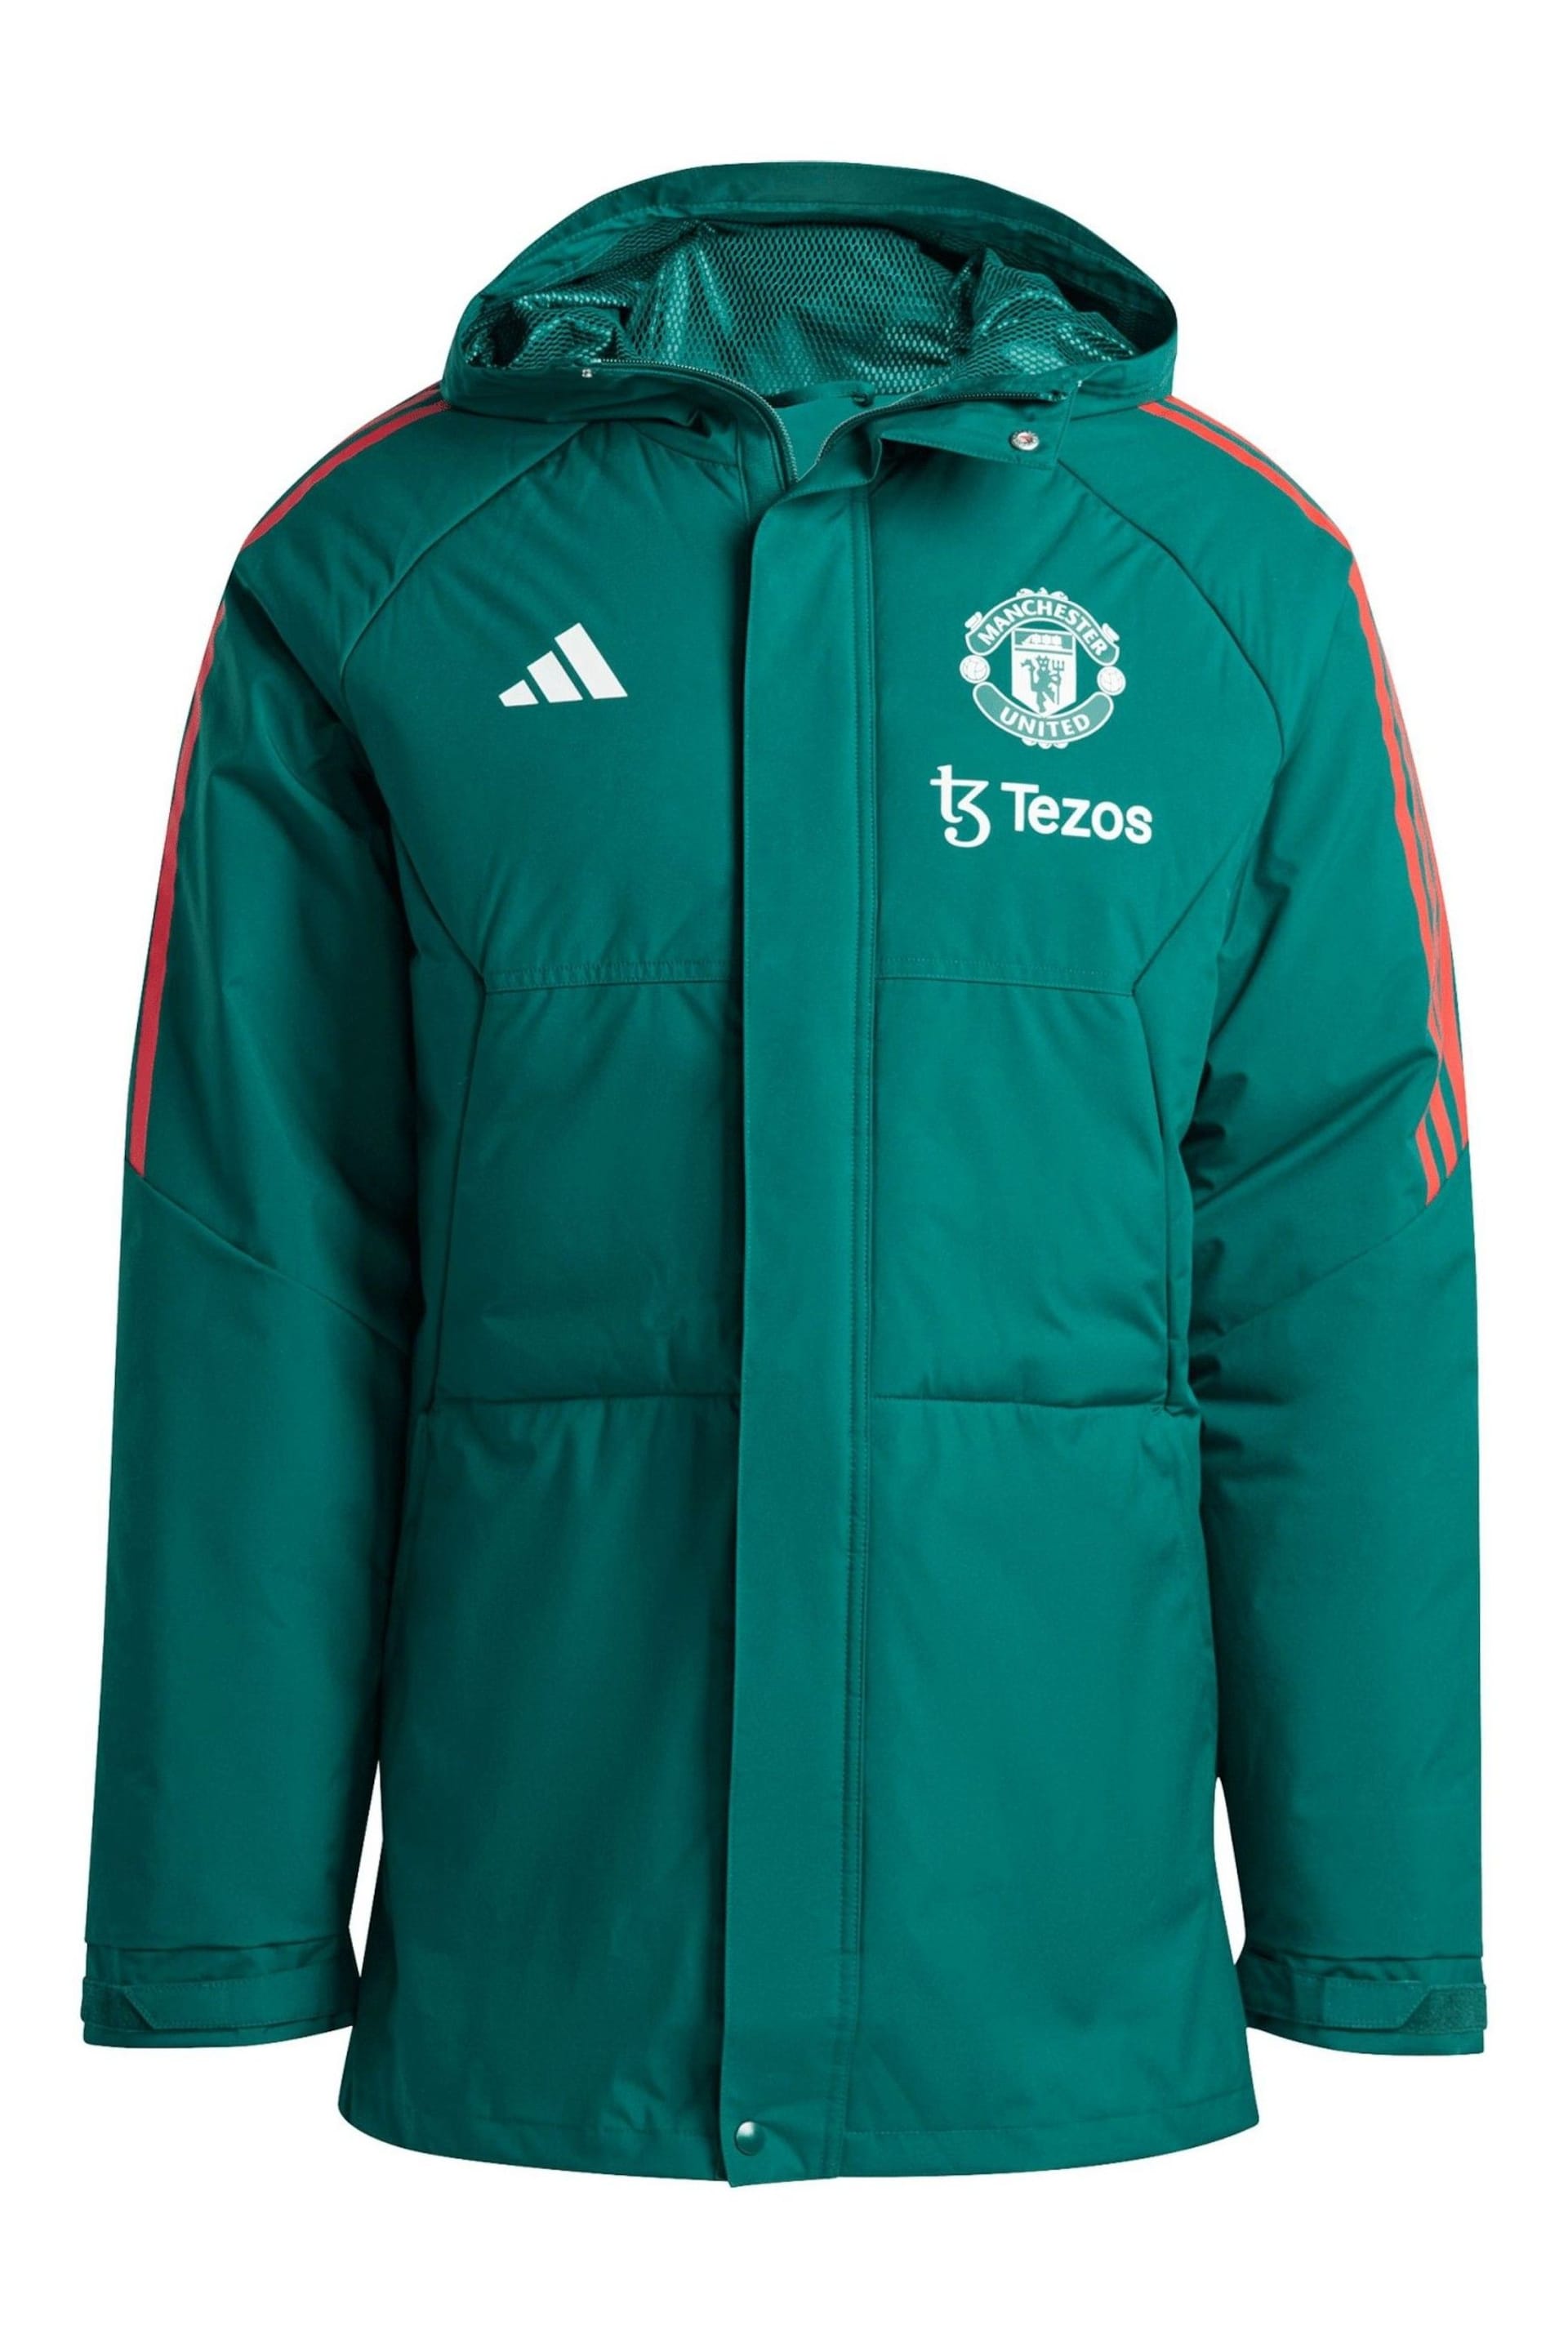 adidas Green Manchester United Training Stadium Parka Jacket - Image 3 of 3